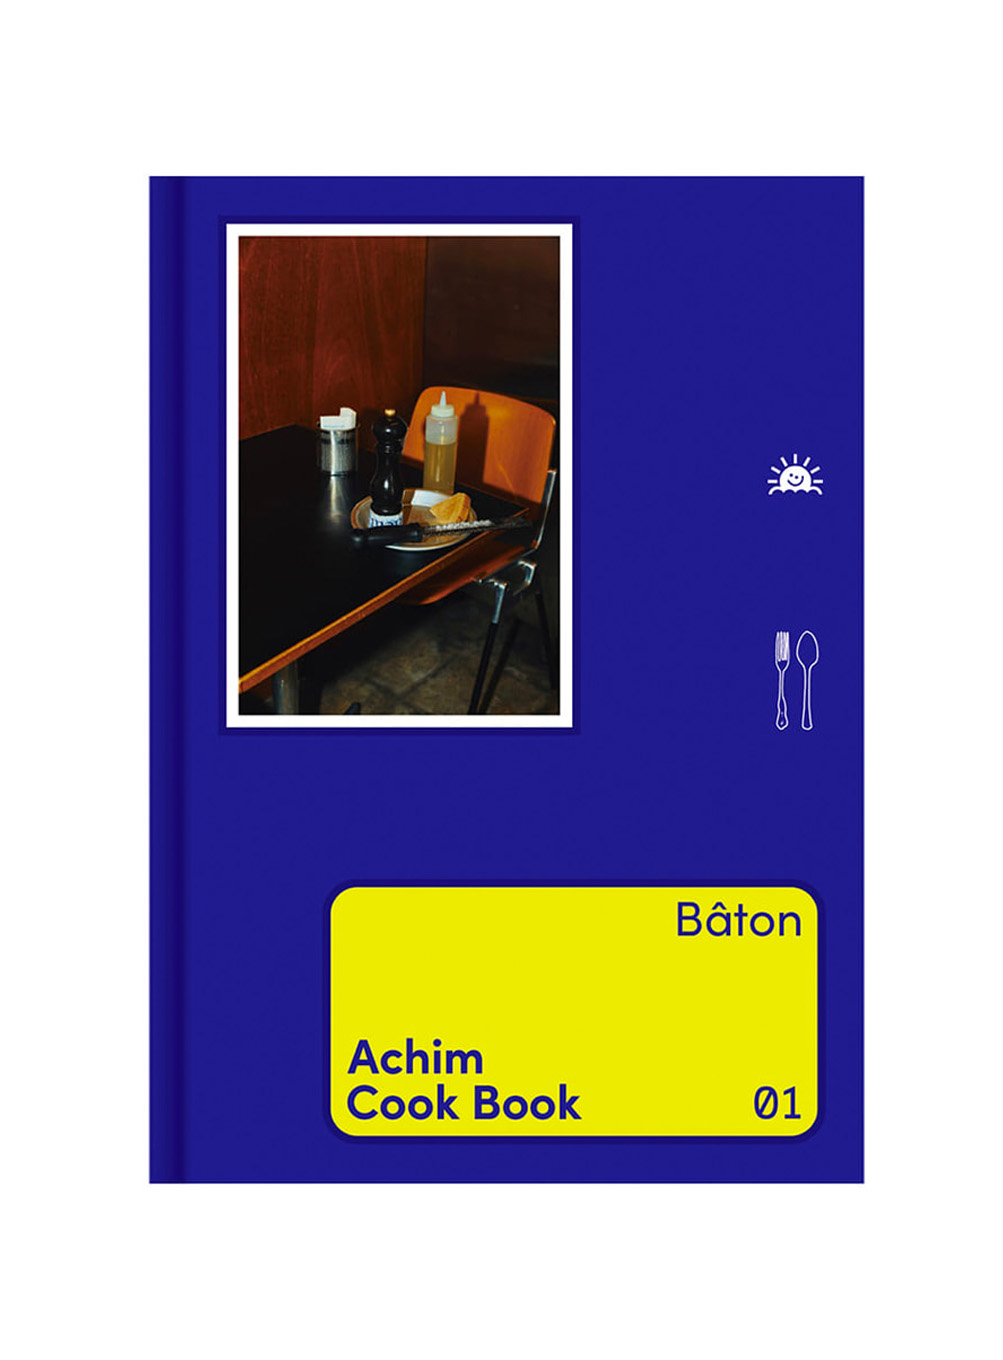 Achim Cook Book Vol.01 Bâton